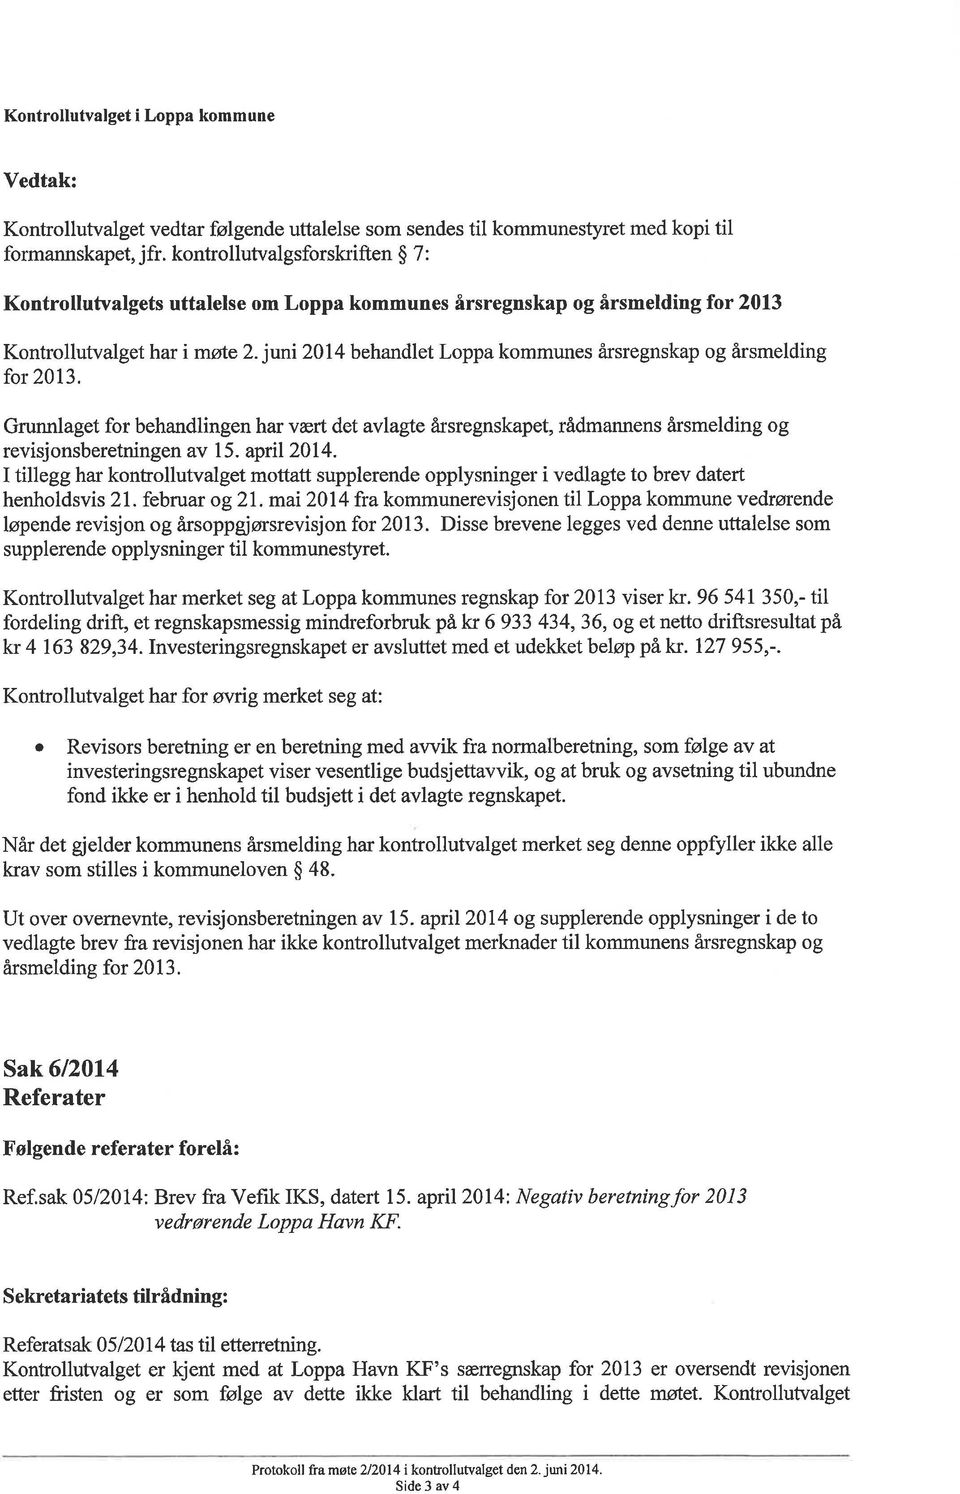 juni 2014 behandlet Loppa kommunes årsregnskap og årsmelding for 2013. Grunnlaget for behandlingen har vært det avlagte årsregnskapet, rådmannens årsmelding og revisjonsberetningen av 1 5. april 2014.